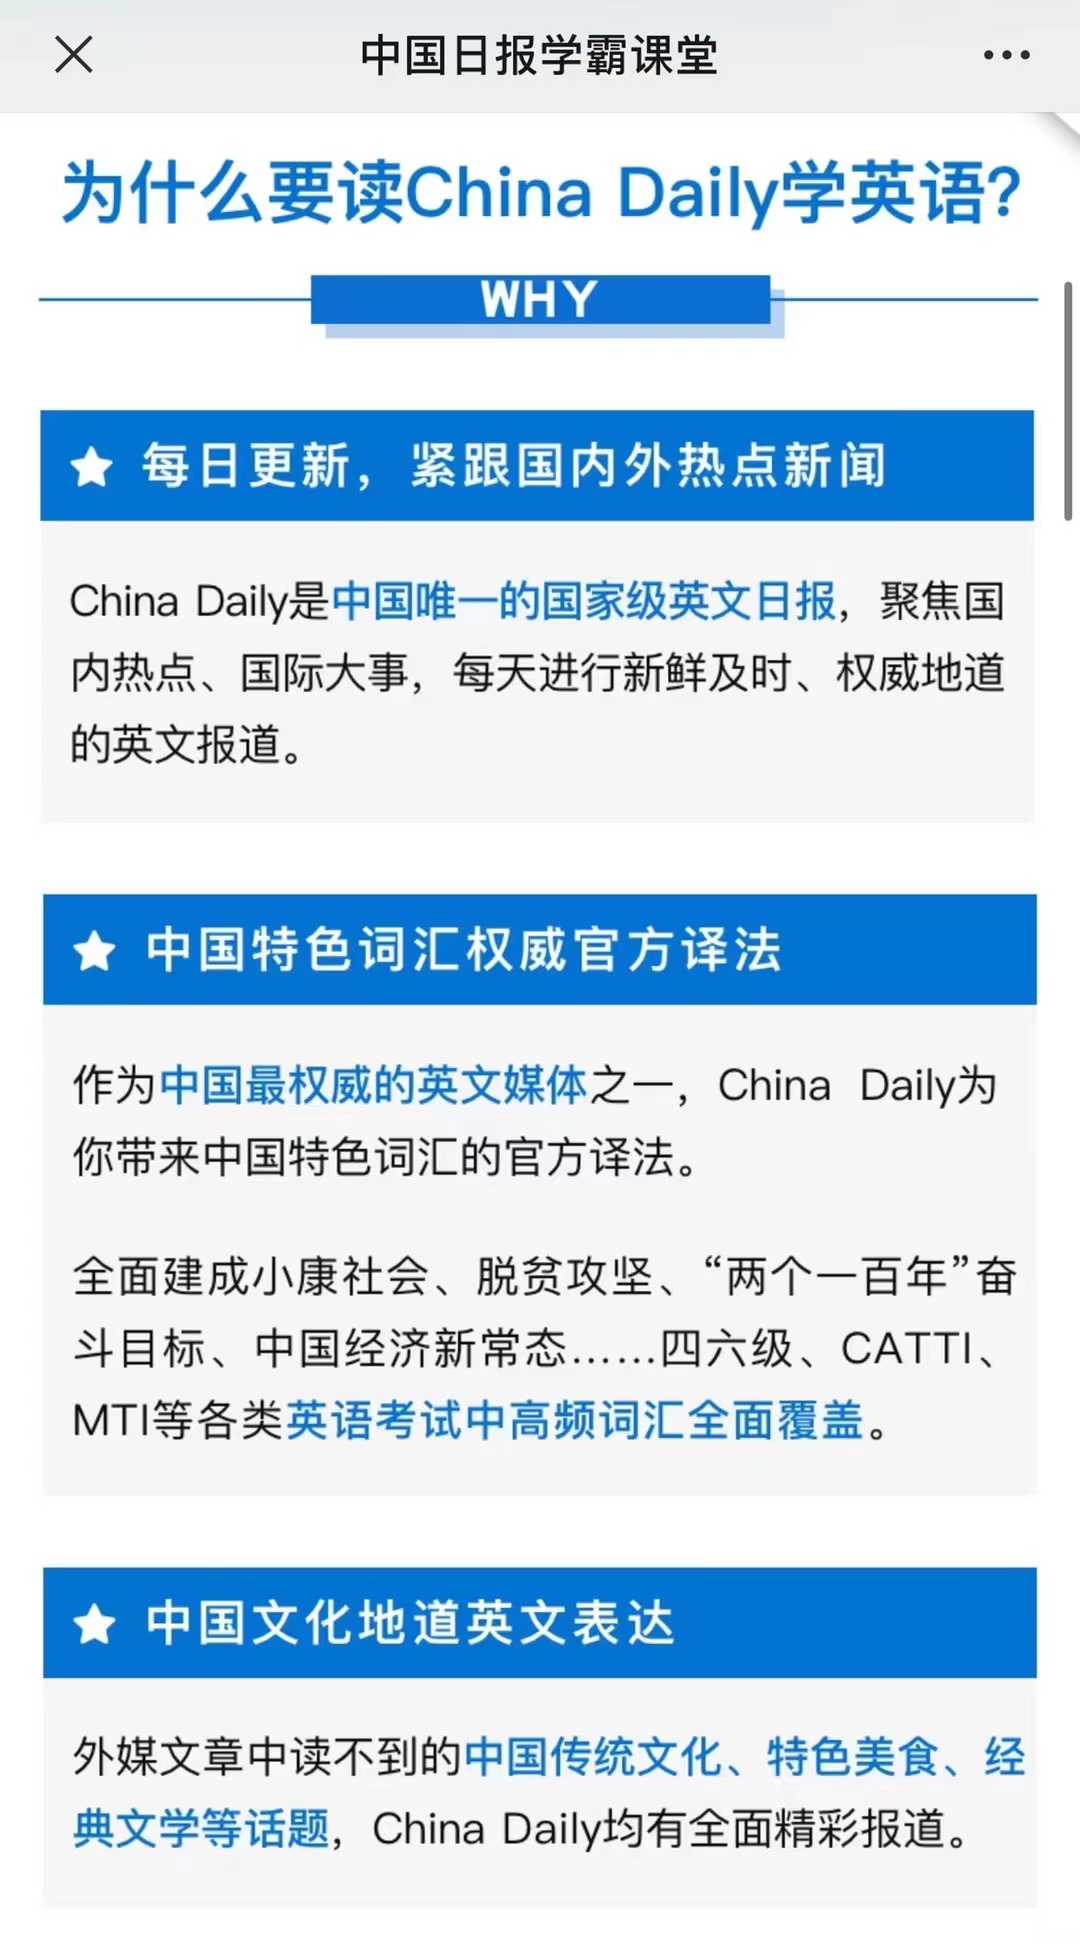 【英语更新】《China Daily 精读计划》 ●更新到0806